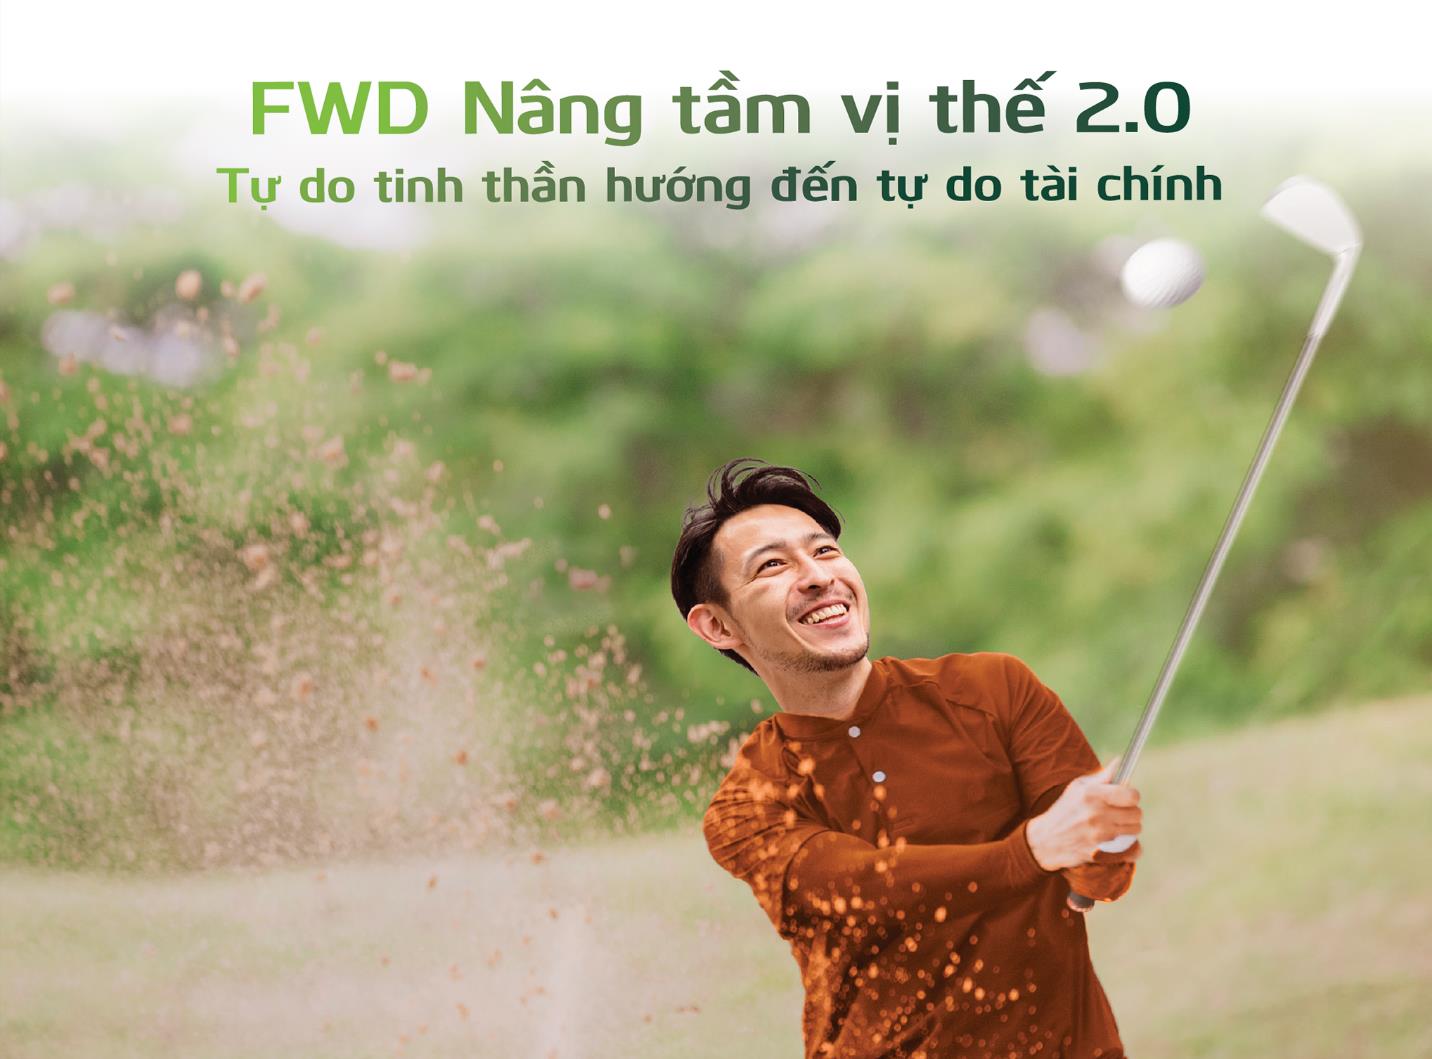 Vietcombank phối hợp với FWD ra mắt sản phẩm bảo hiểm liên kết đầu tư mới “FWD Nâng tầm vị thế 2.0” - Ảnh 1.